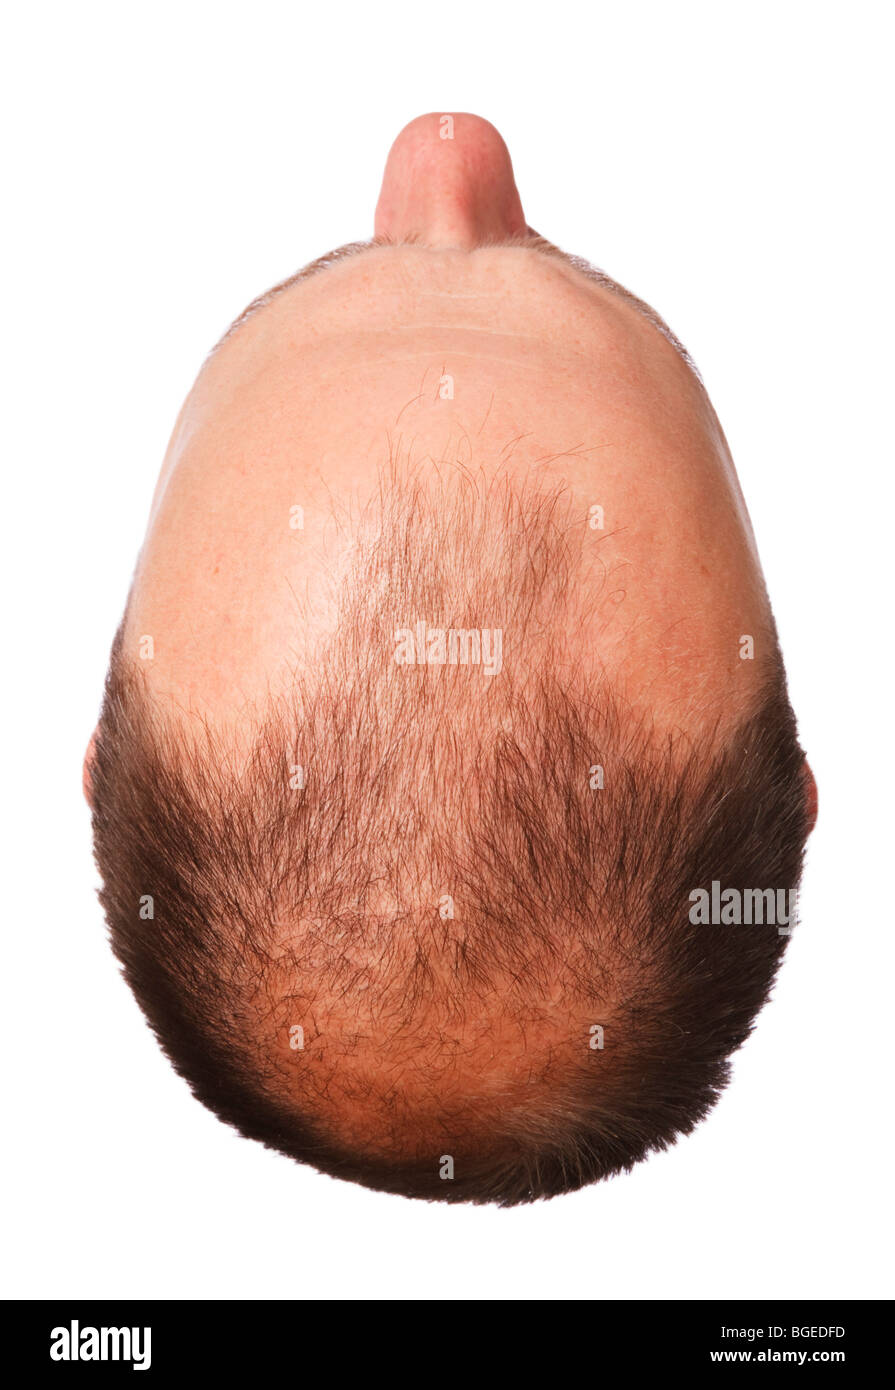 Kopf eines Mannes mit männlichen Haarausfall, isoliert auf weißem Hintergrund Stockfoto